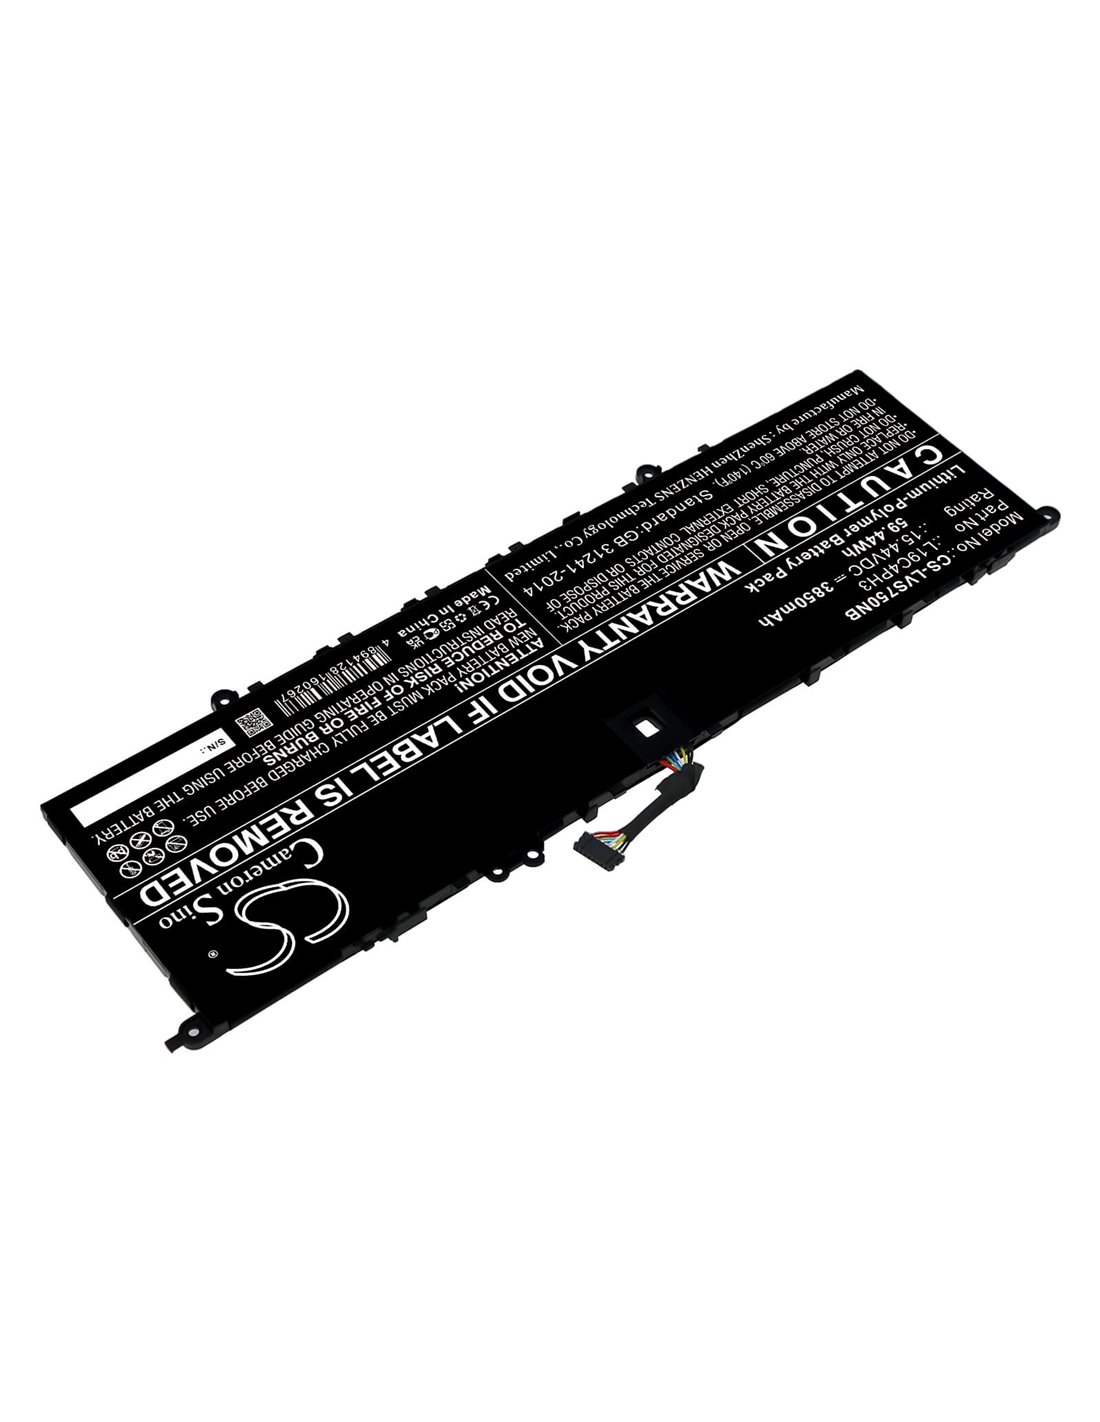 Battery for Lenovo, Yoga S750-14 Pro 15.44V, 3850mAh - 59.44Wh